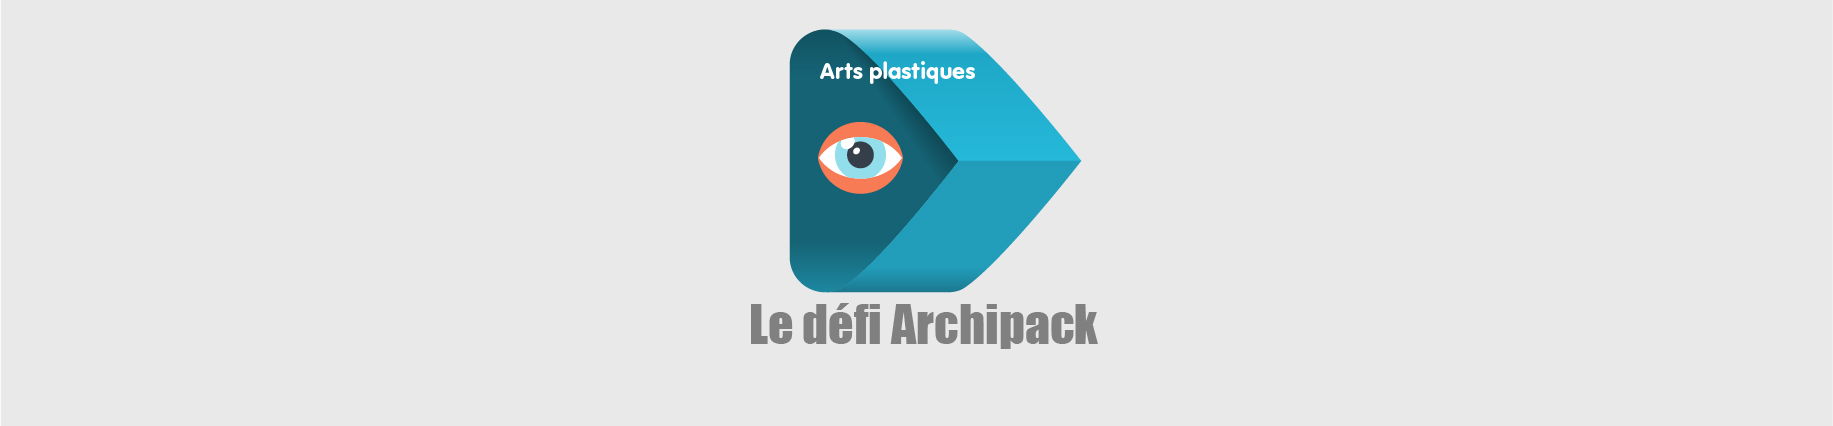 DANE Nancy-Metz arts plastiques archi-pack ressources